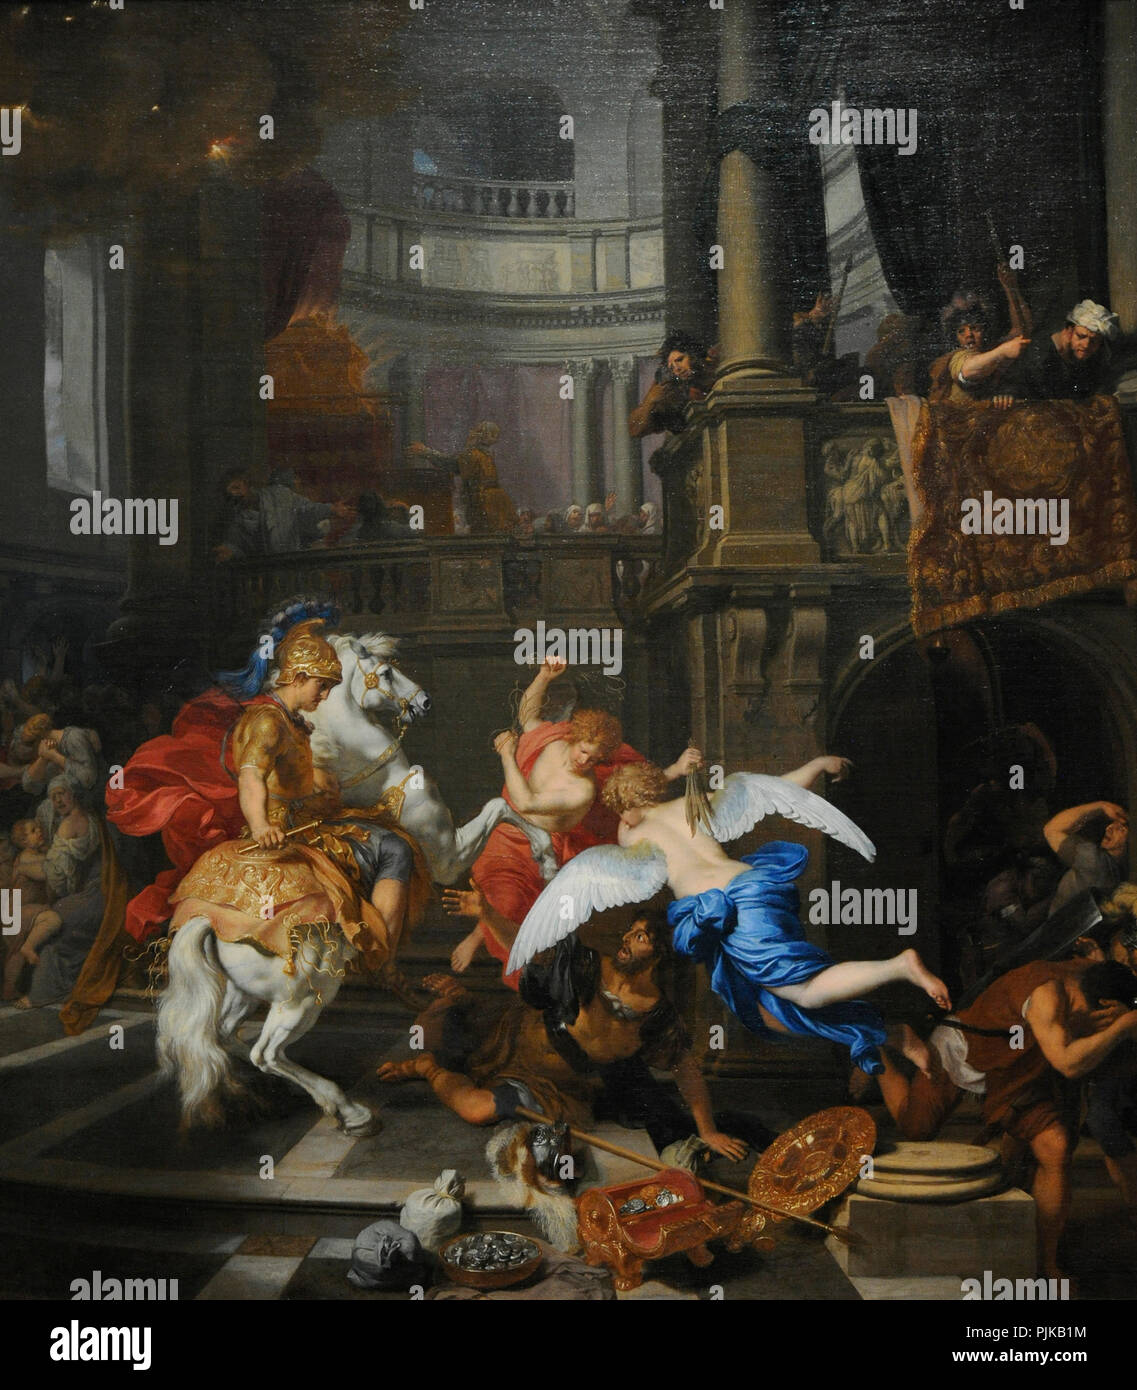 Gerard de Lairesse (1640-1711). Niederländische Maler. Vertreibung des Heliodor aus dem Tempel, 1674. Wallraf-Richartz-Museum. Köln. Deutschland. Stockfoto